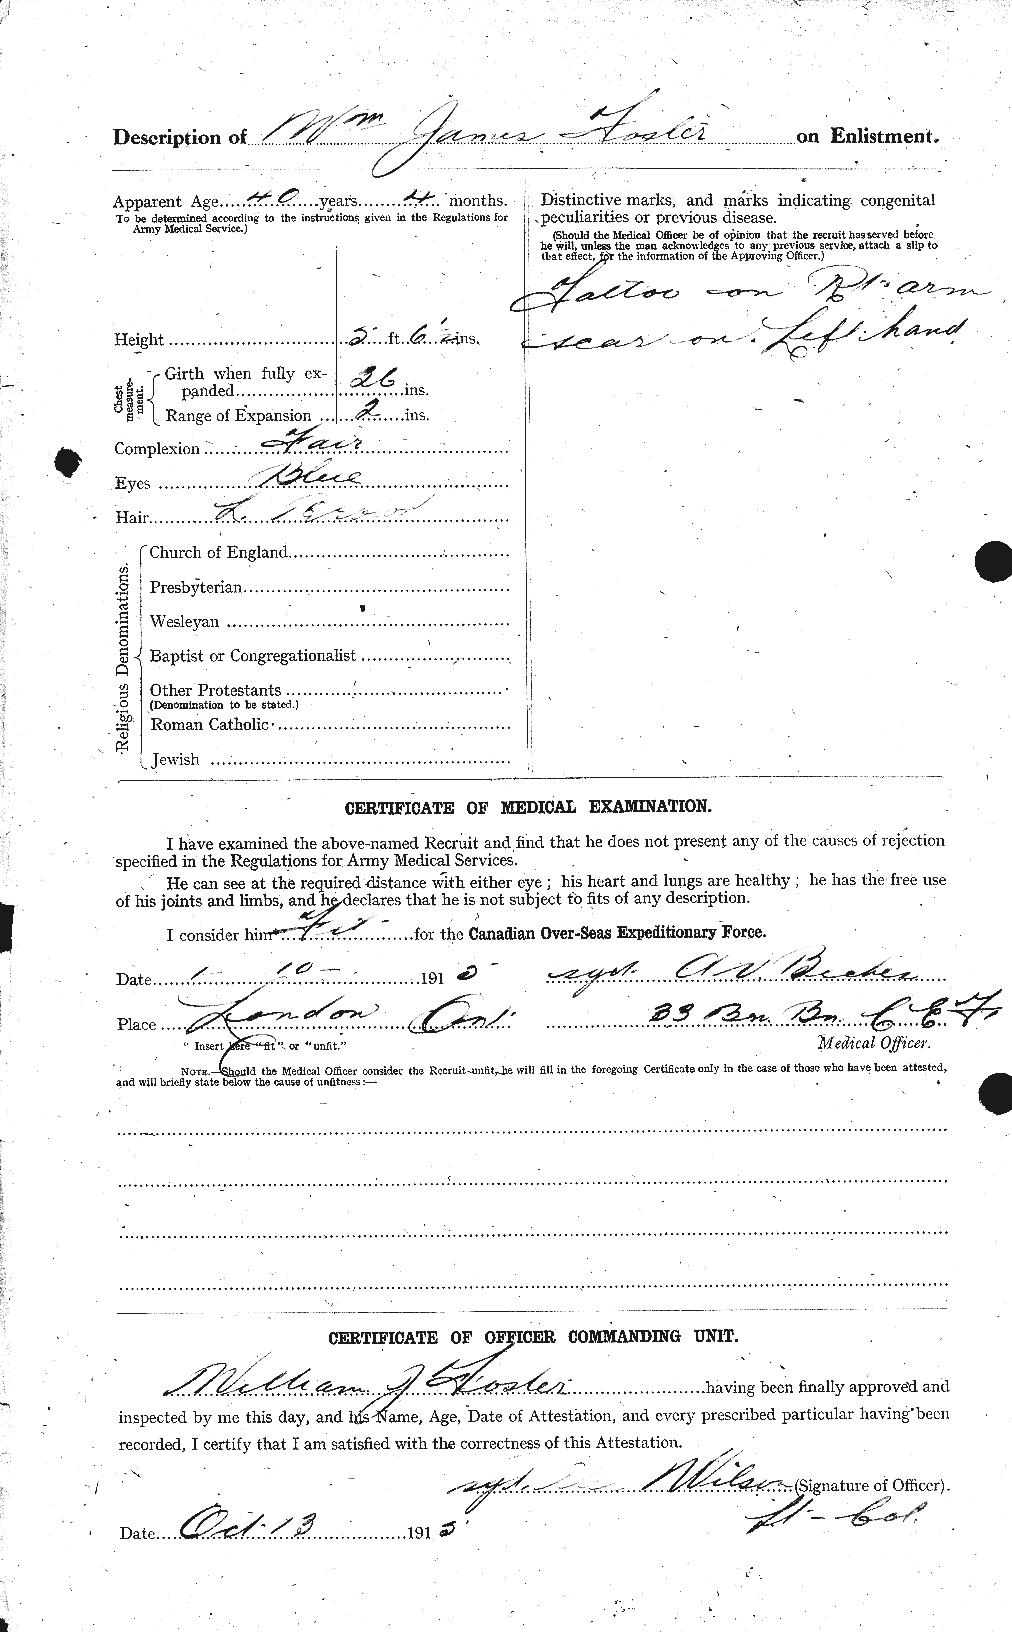 Dossiers du Personnel de la Première Guerre mondiale - CEC 328758b